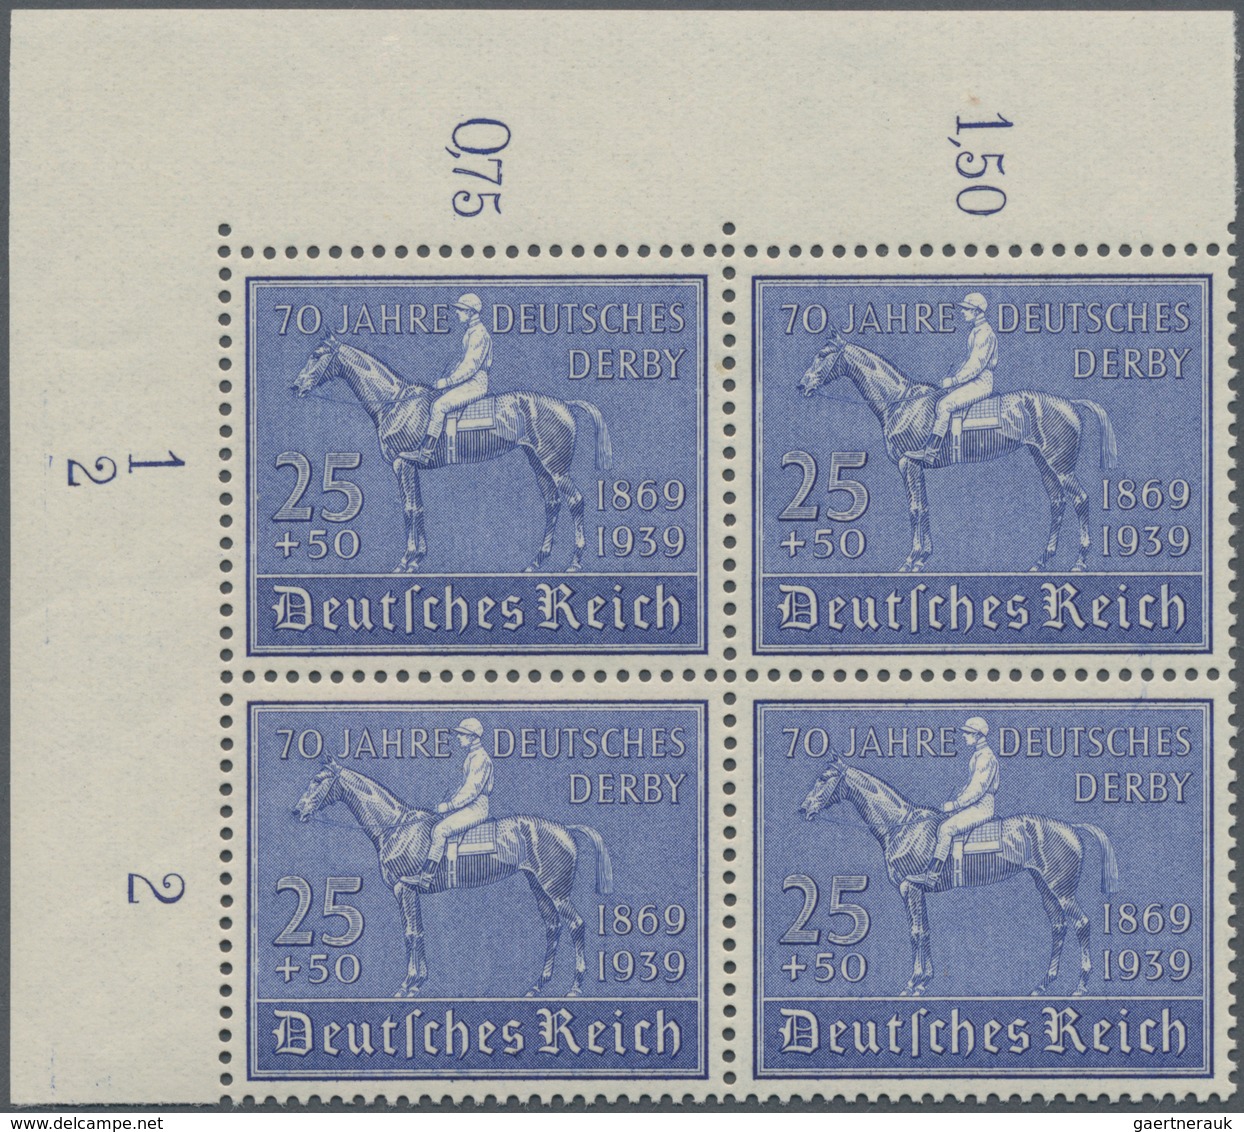 Deutsches Reich - 3. Reich: 1939, 25+50 Pf 70. Jahre Deutsches Derby, Postfrische Bogenecke Links Ob - Briefe U. Dokumente